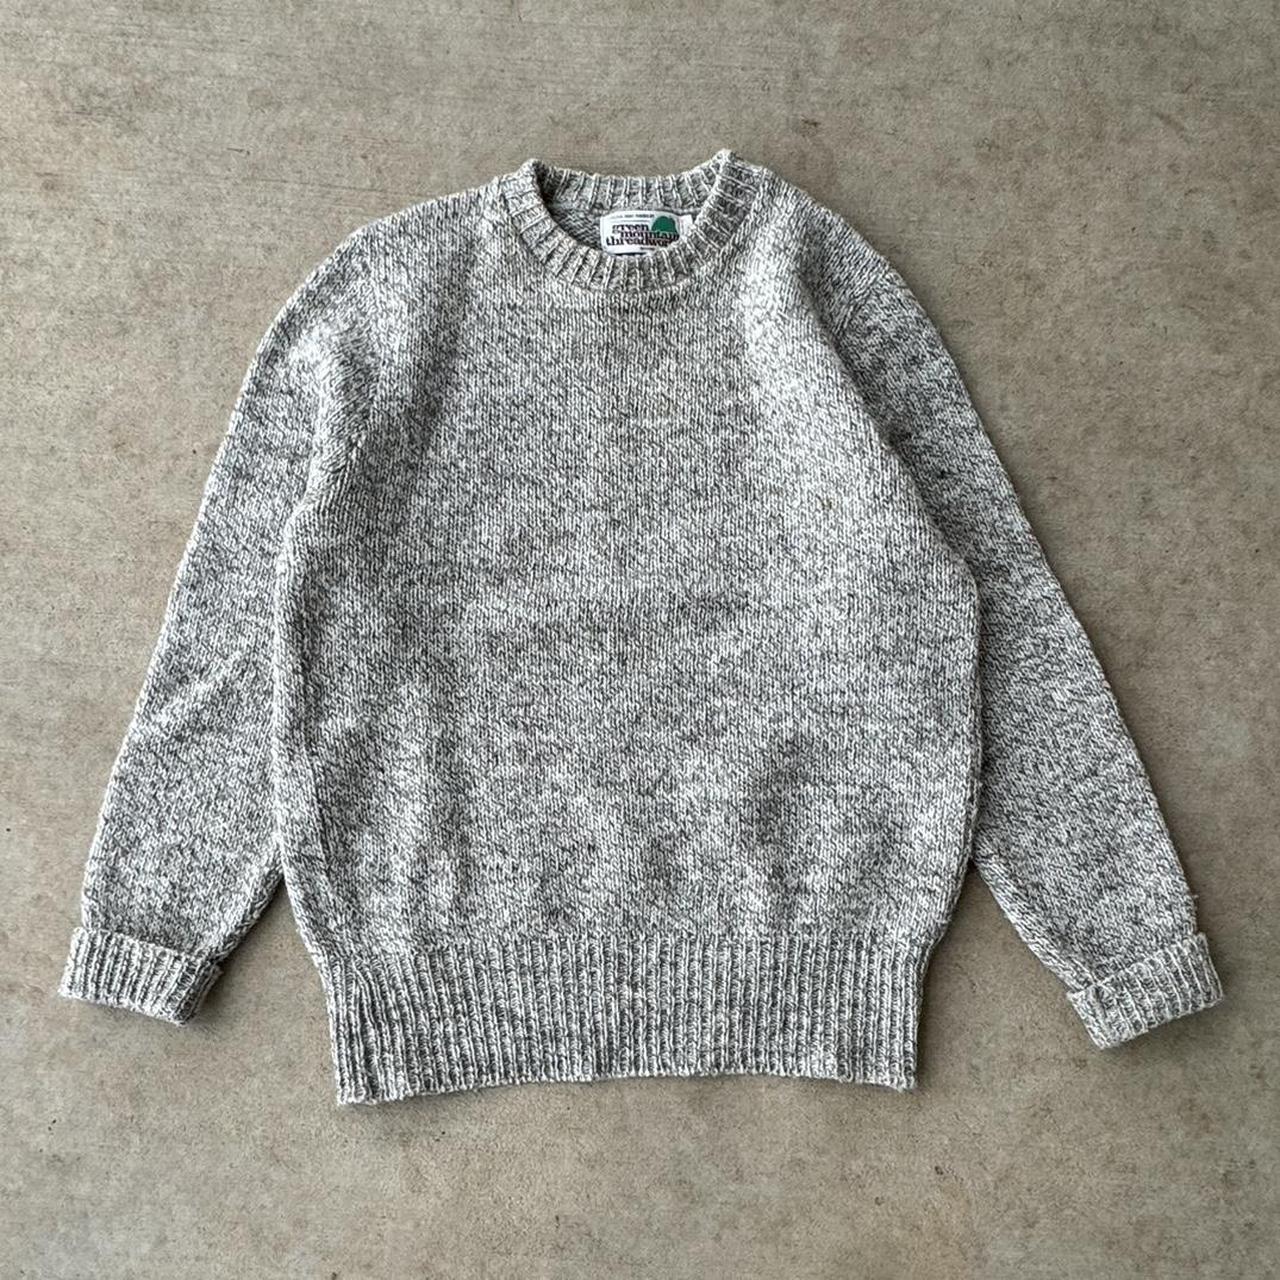 vintage 80s/90s knit sweater tagged L fits tts... - Depop